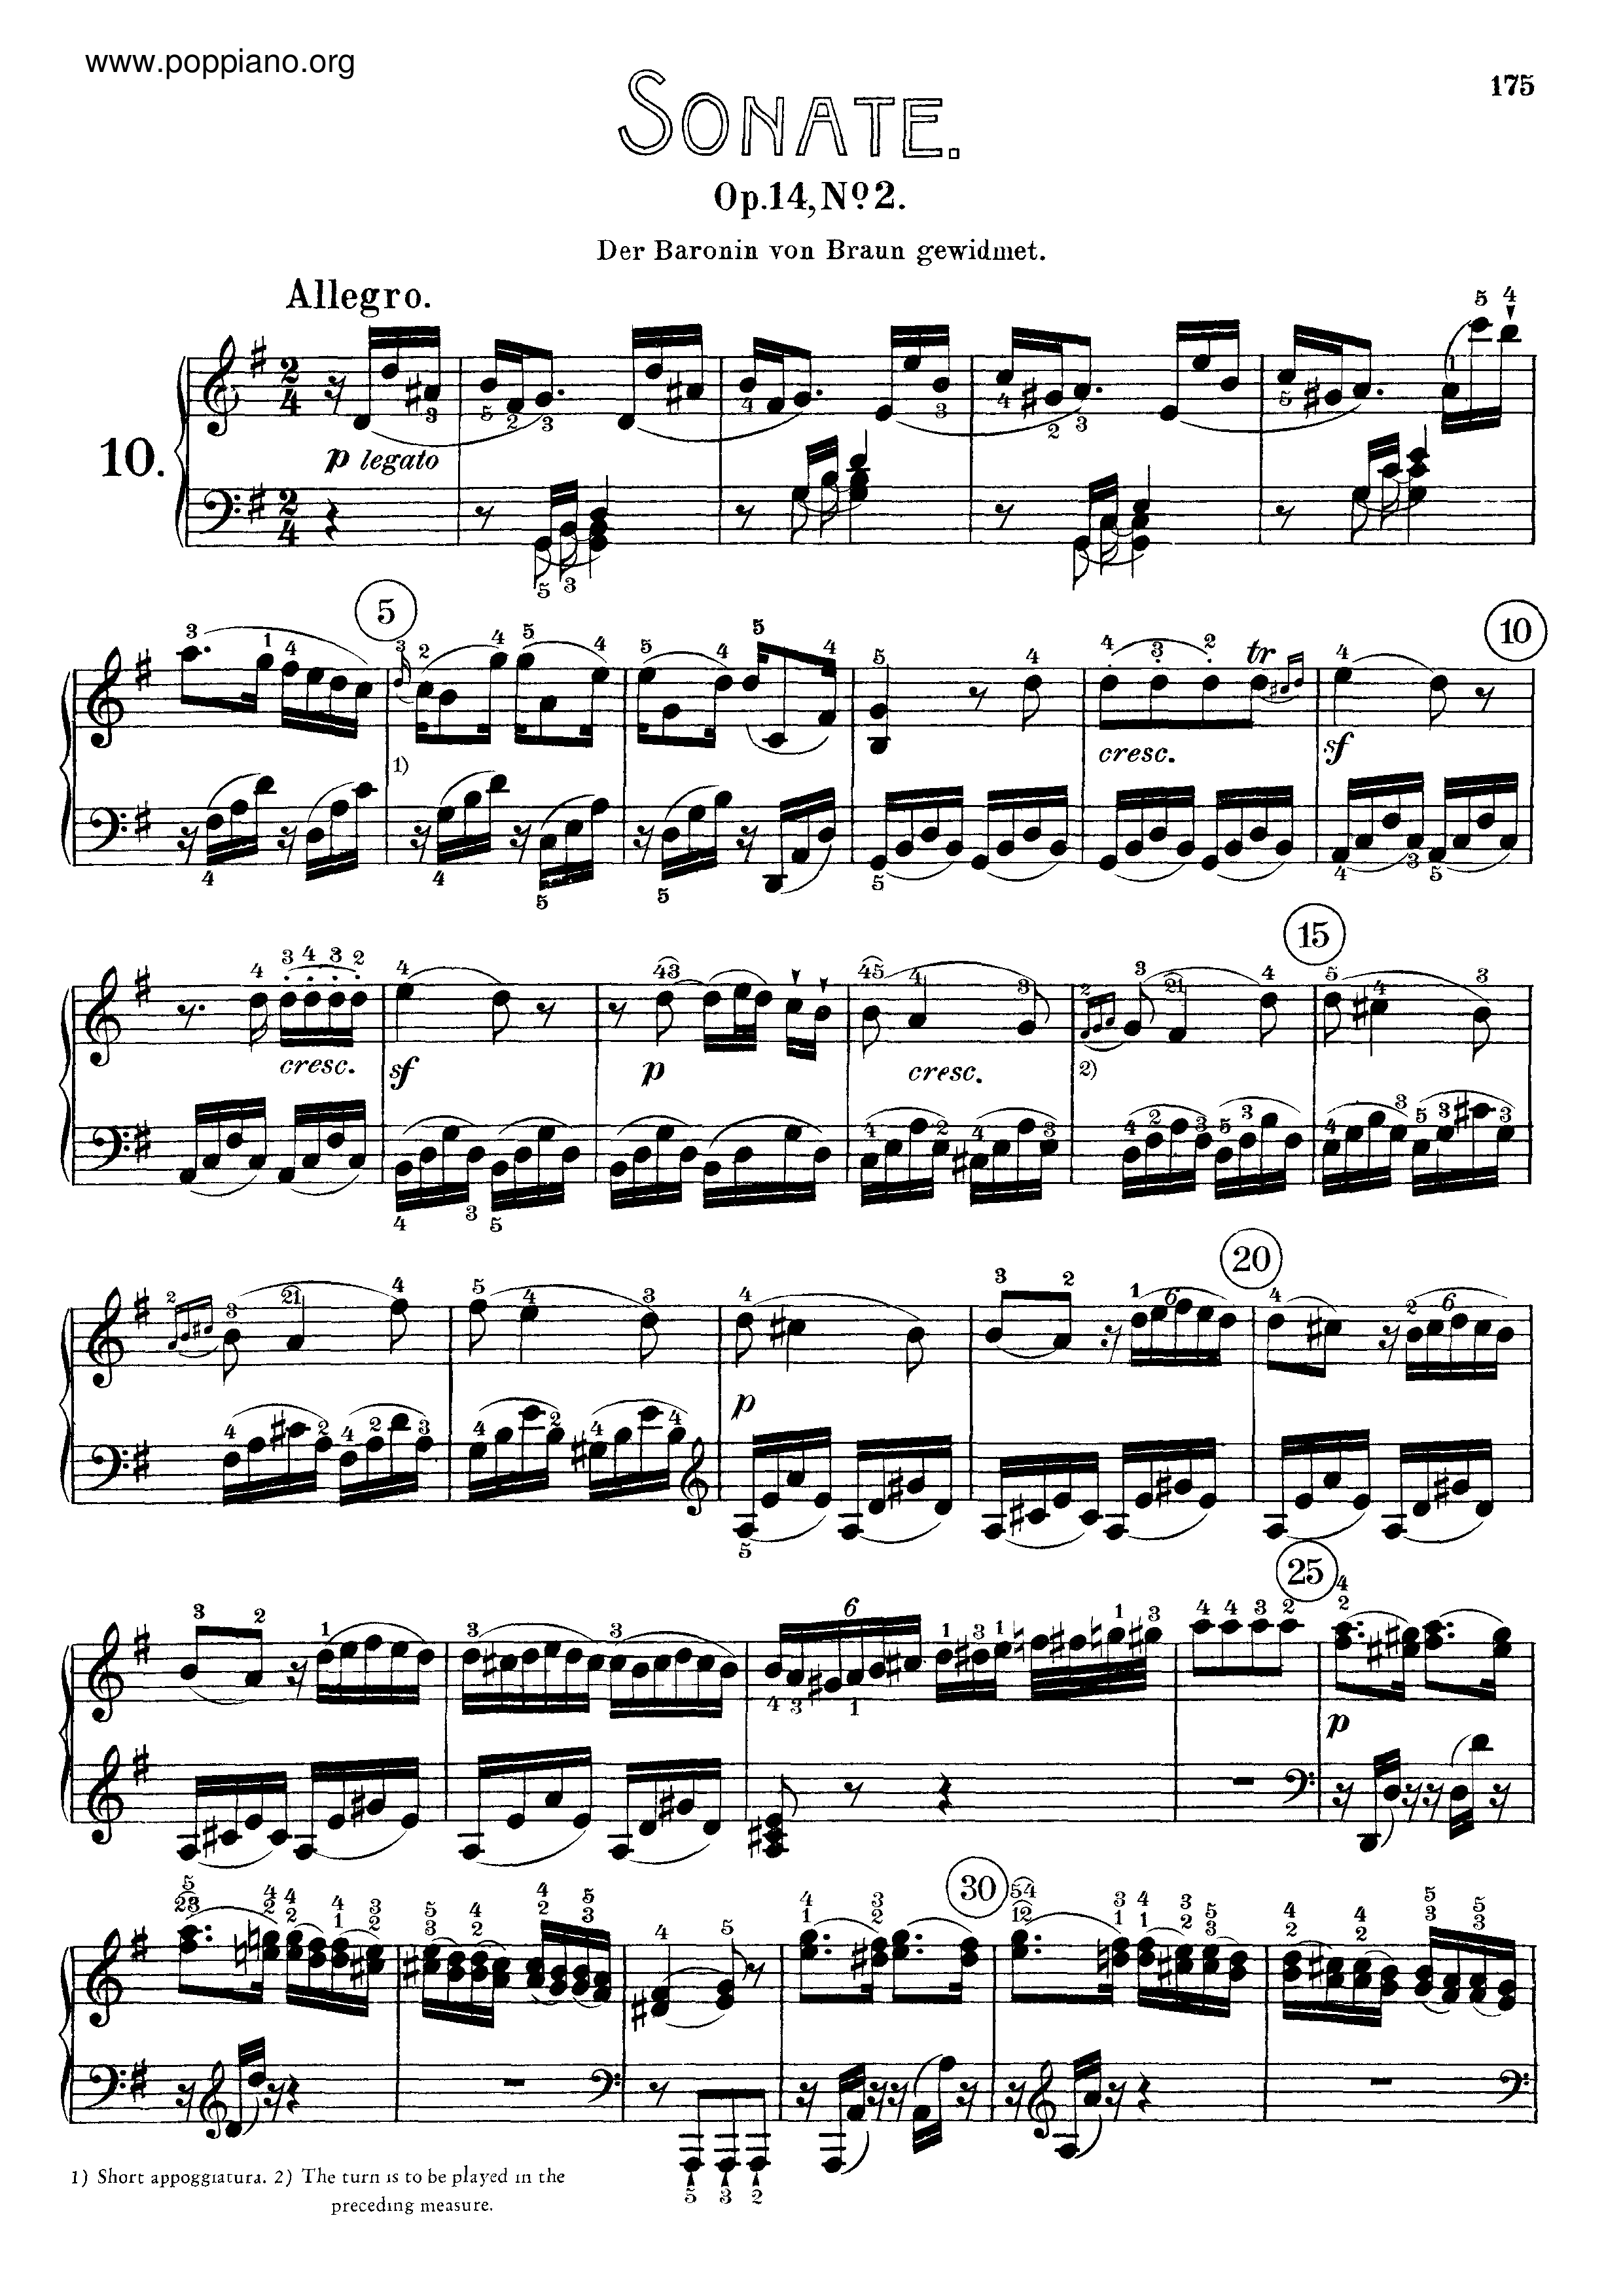 Sonata No. 10 in G major Score